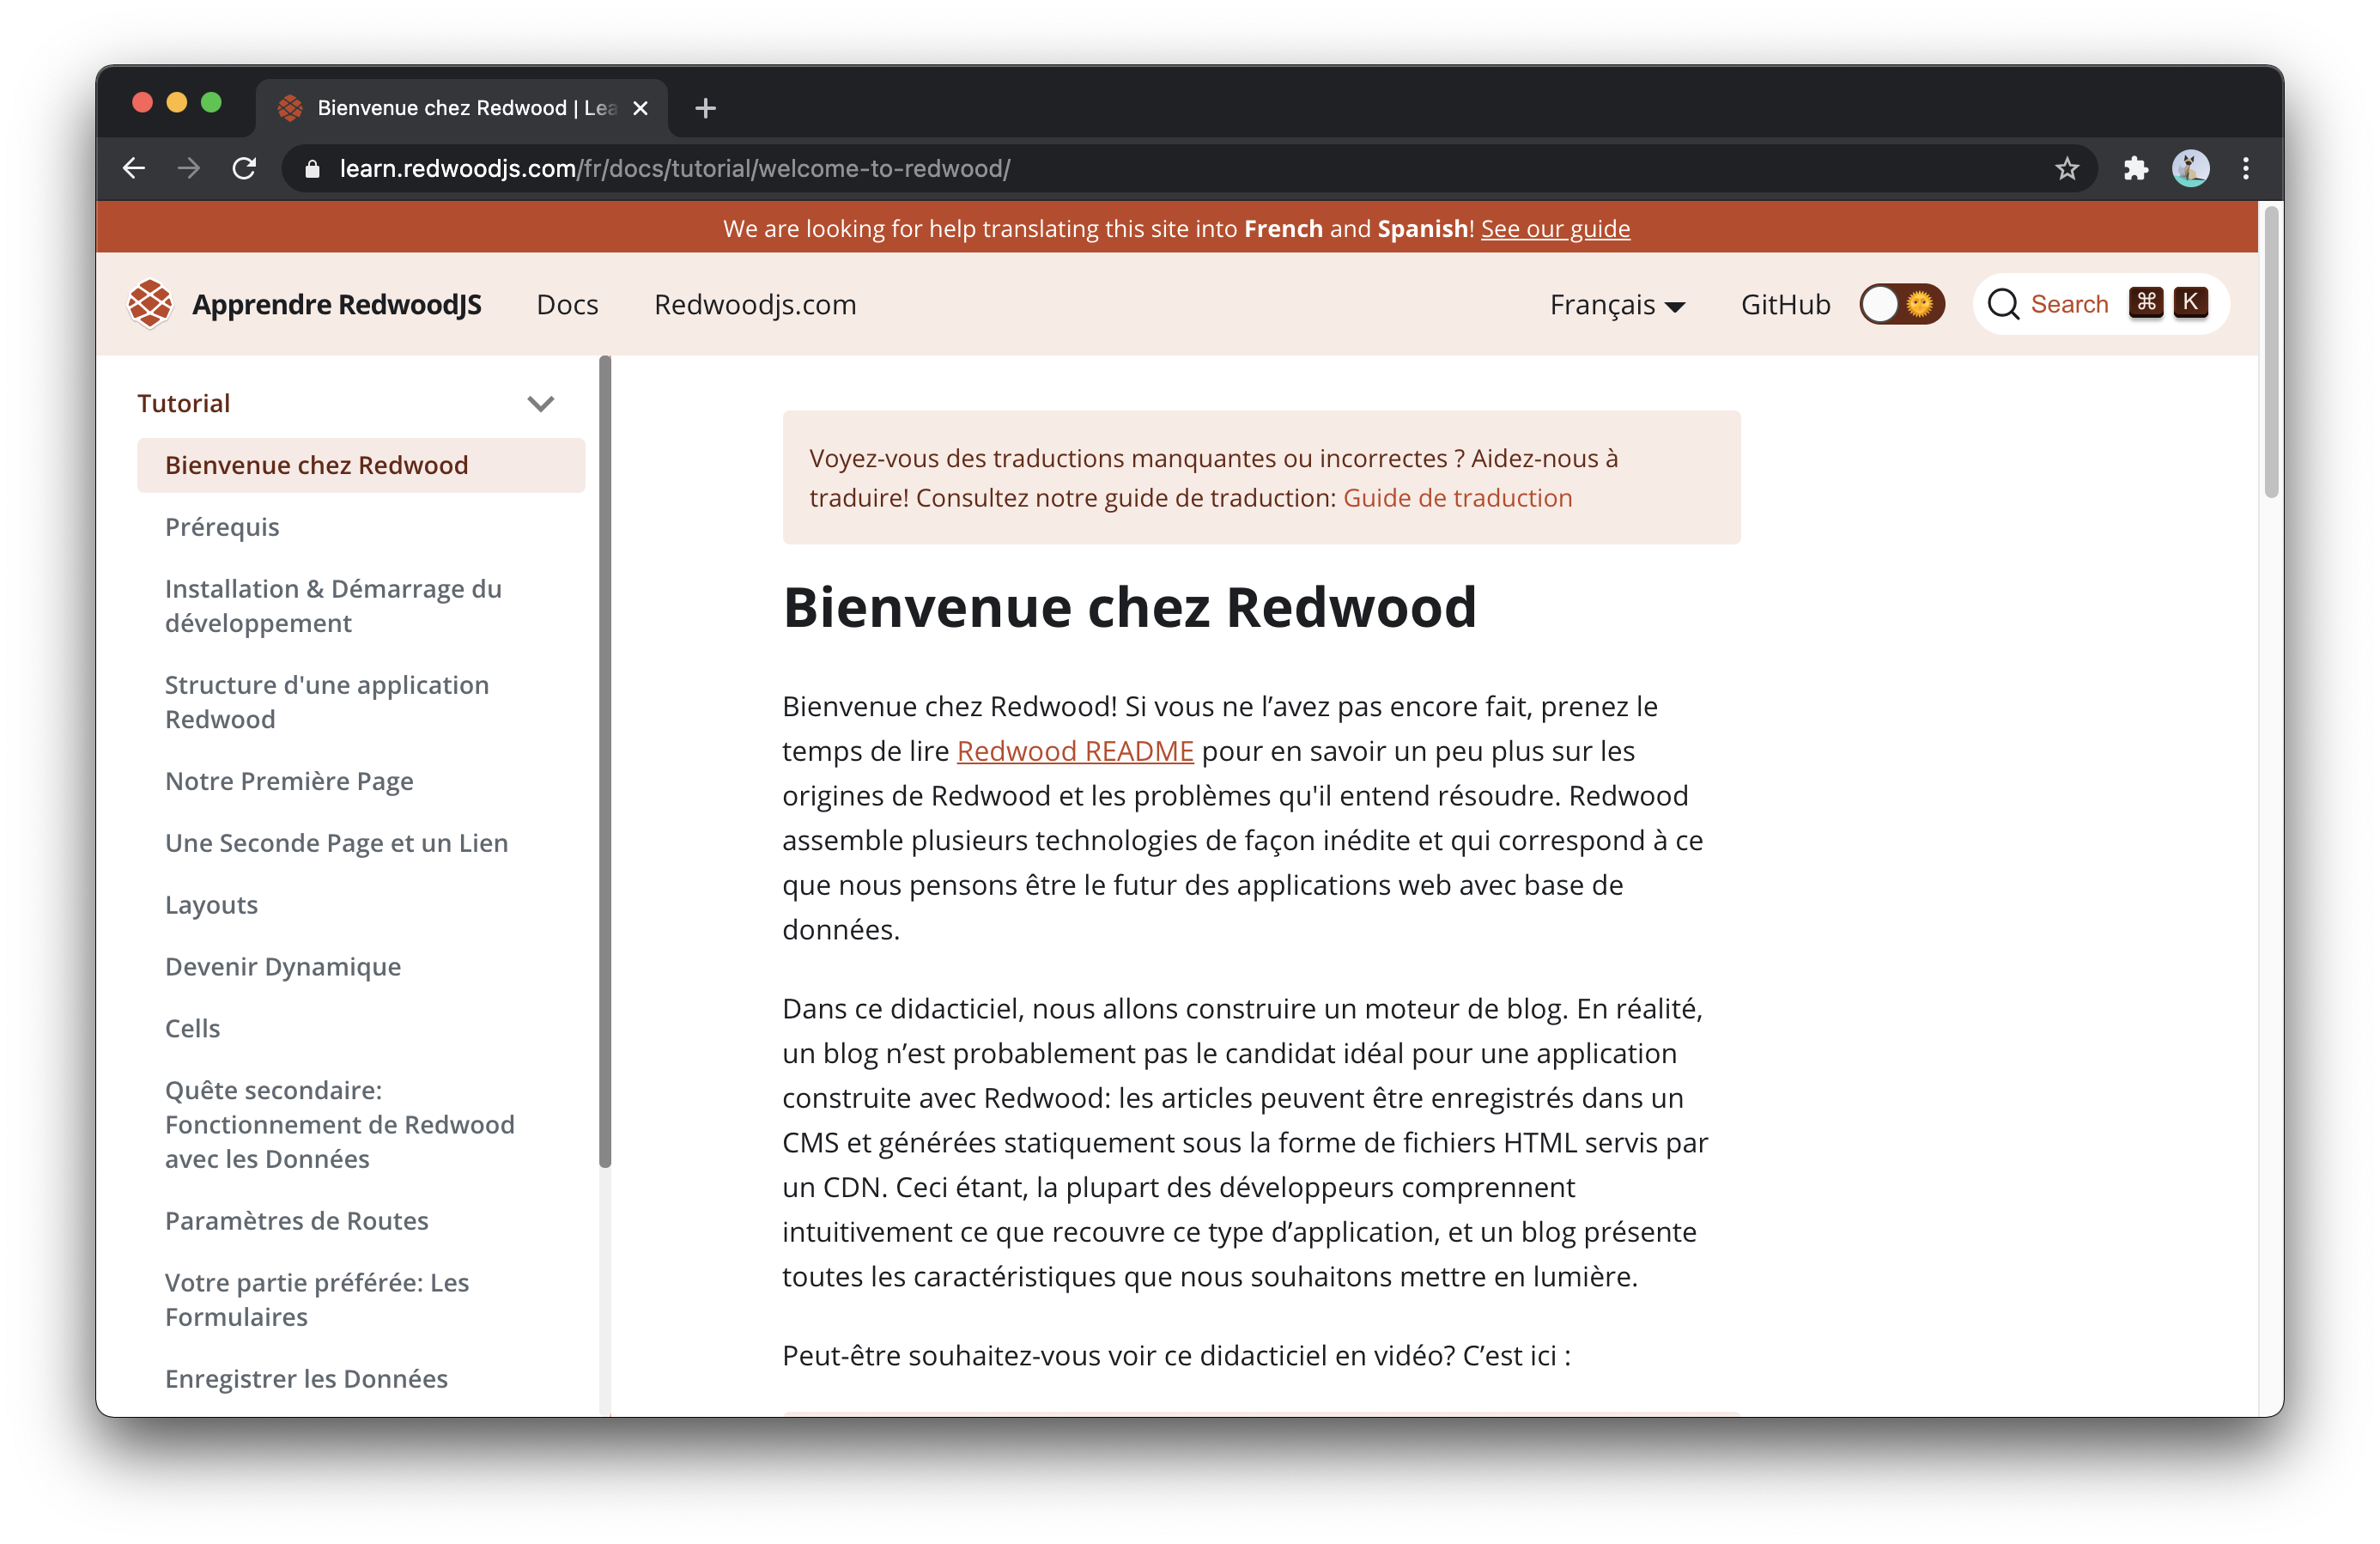 Page doc de Redwood en français